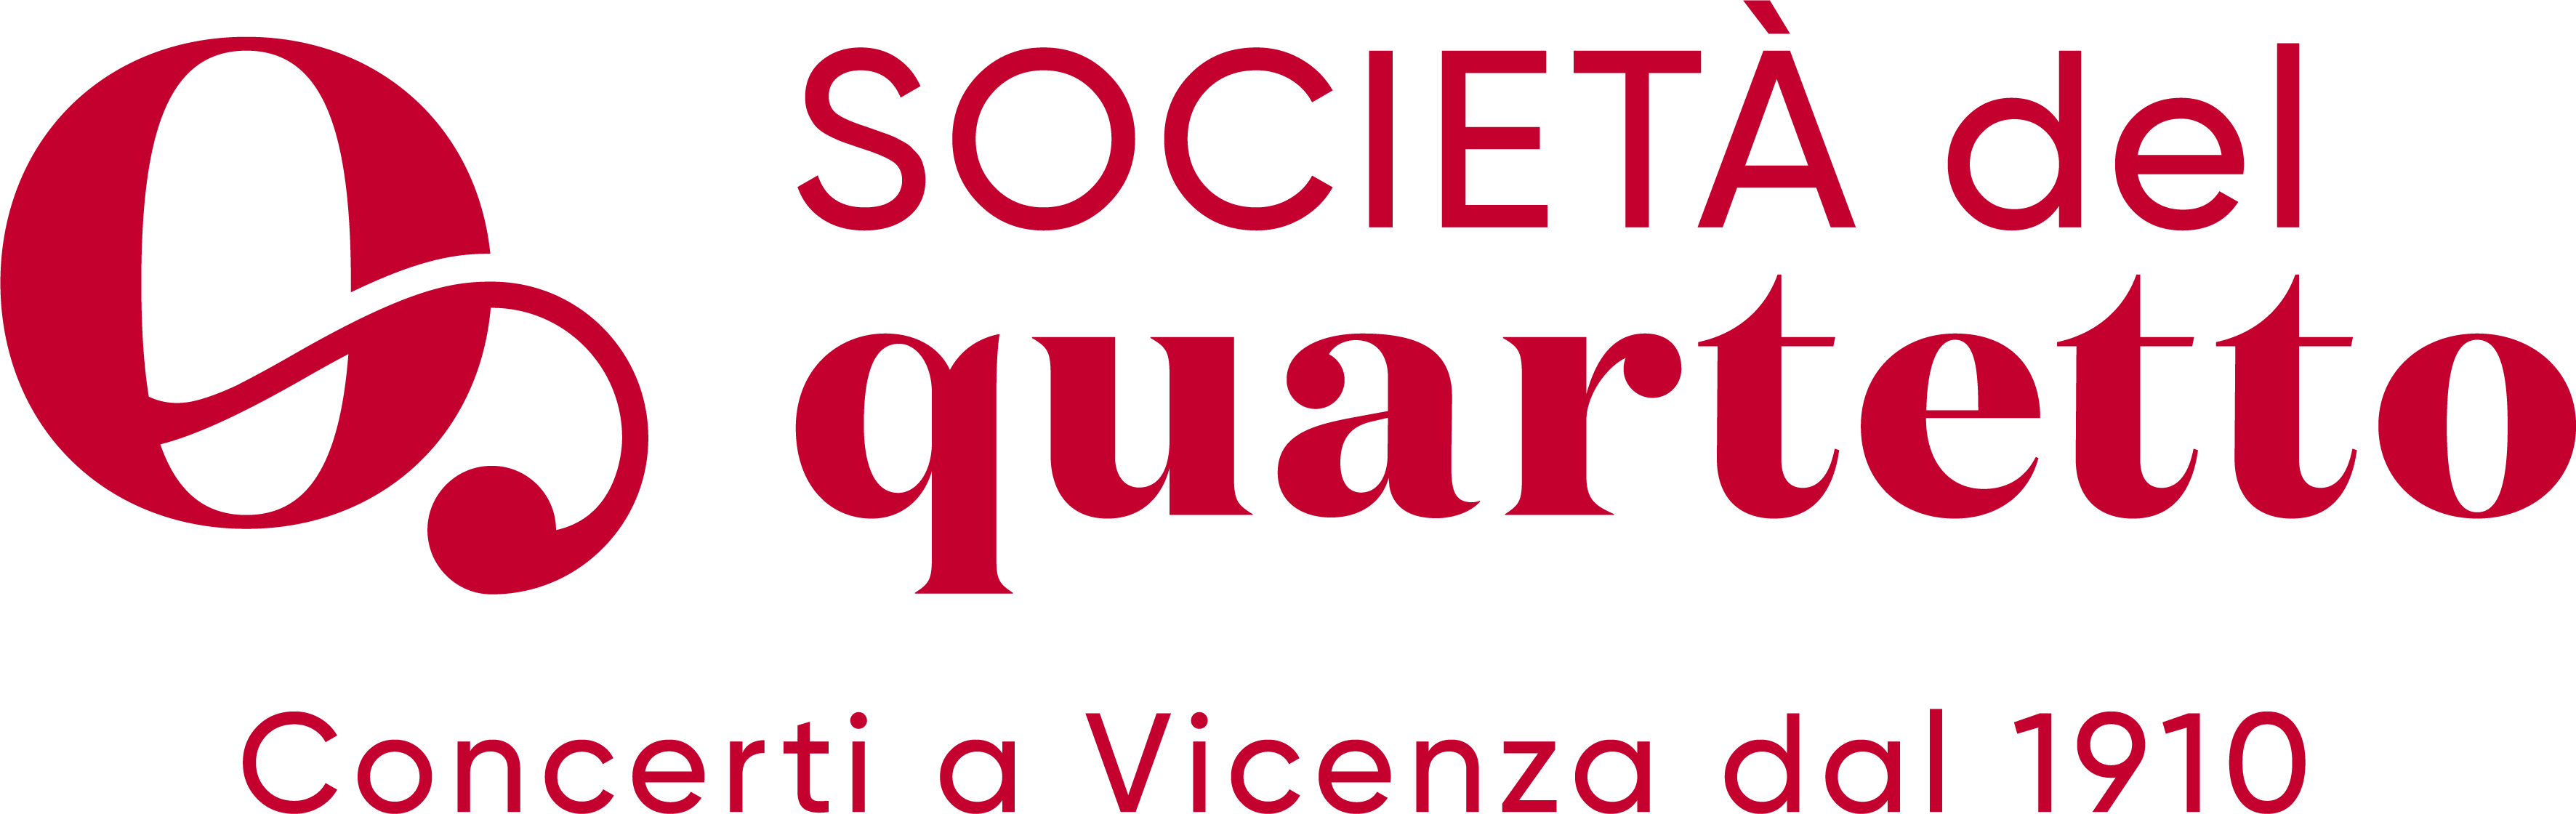 Immagini di Sostegno alla Società del Quartetto di Vicenza - anno 2021